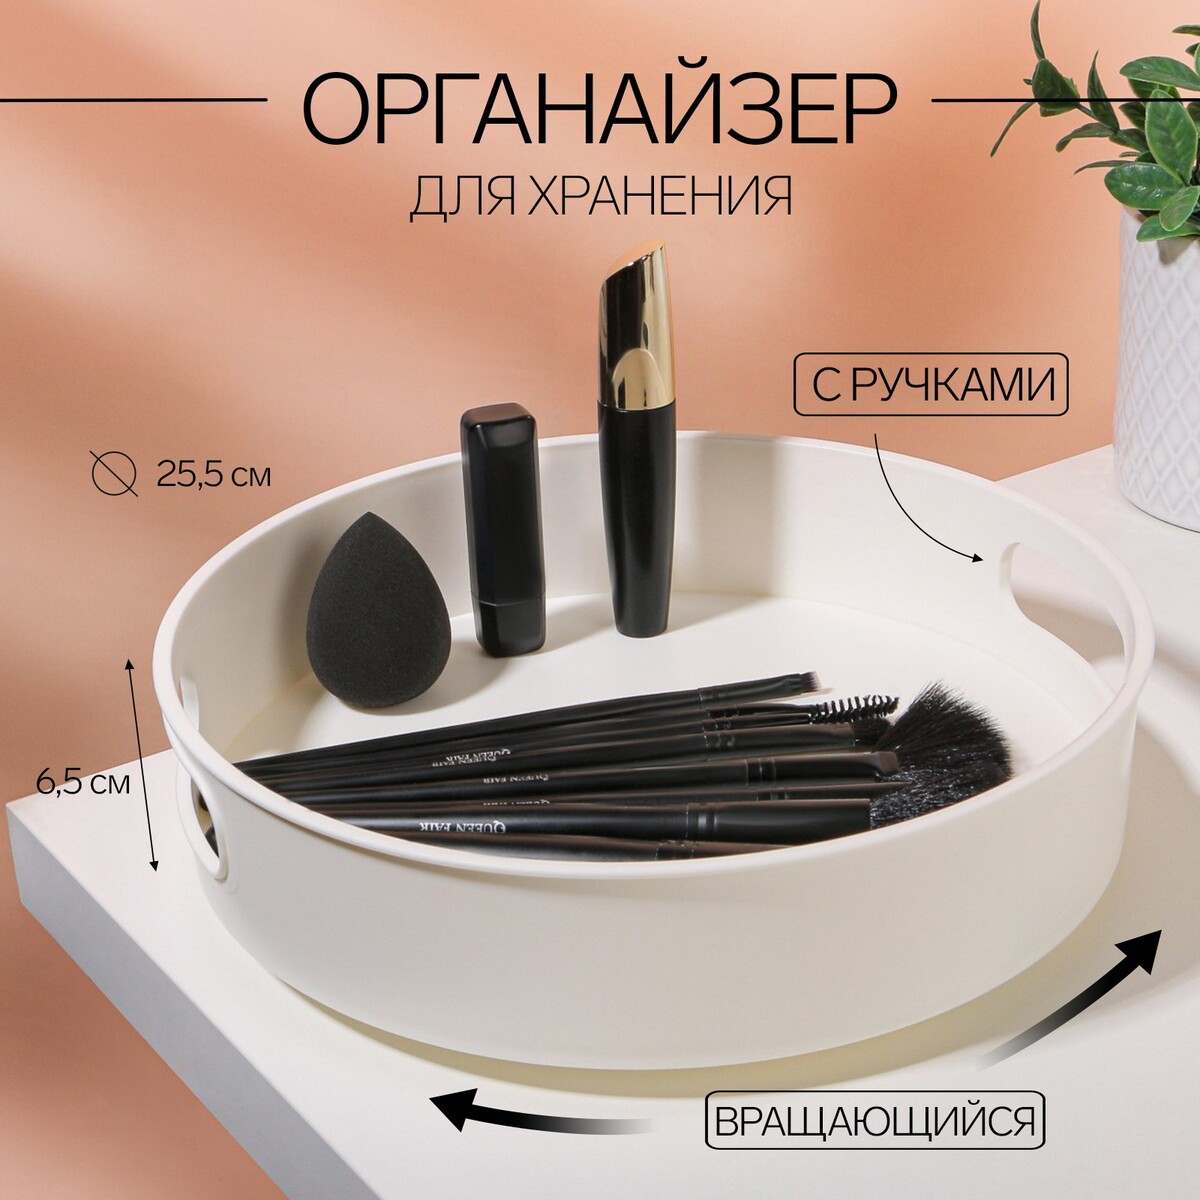 Органайзер для хранения, вращающийся, с ручками, 25,5 × 6,5 см, цвет белый bradex диск вращающийся грация плюс с эспандерами